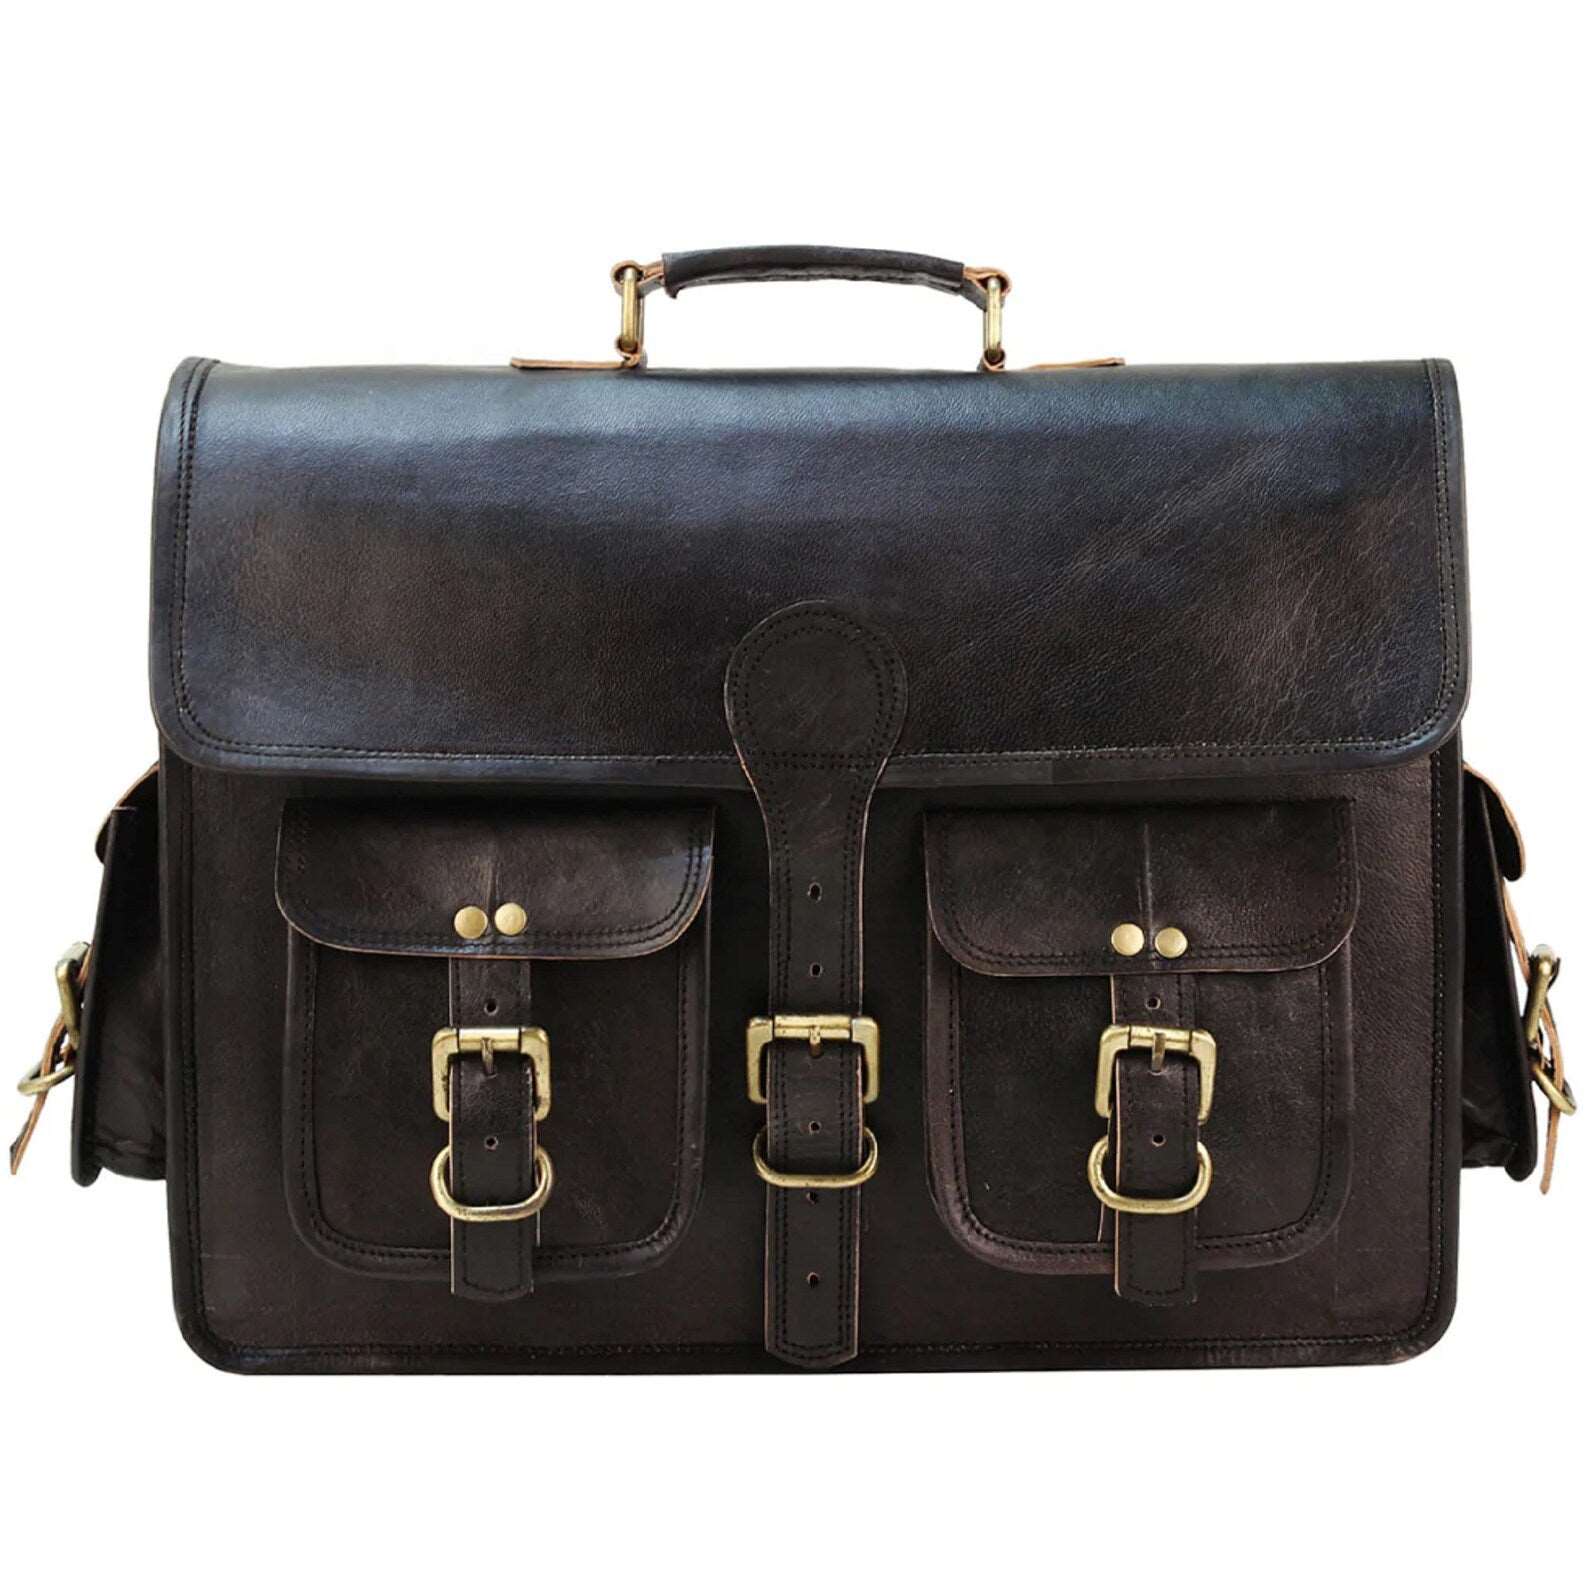 Black Leather Messenger Bag for Men and Women 18 Inch | Handmade Vintage Genuine Leather Laptop Bag for Men